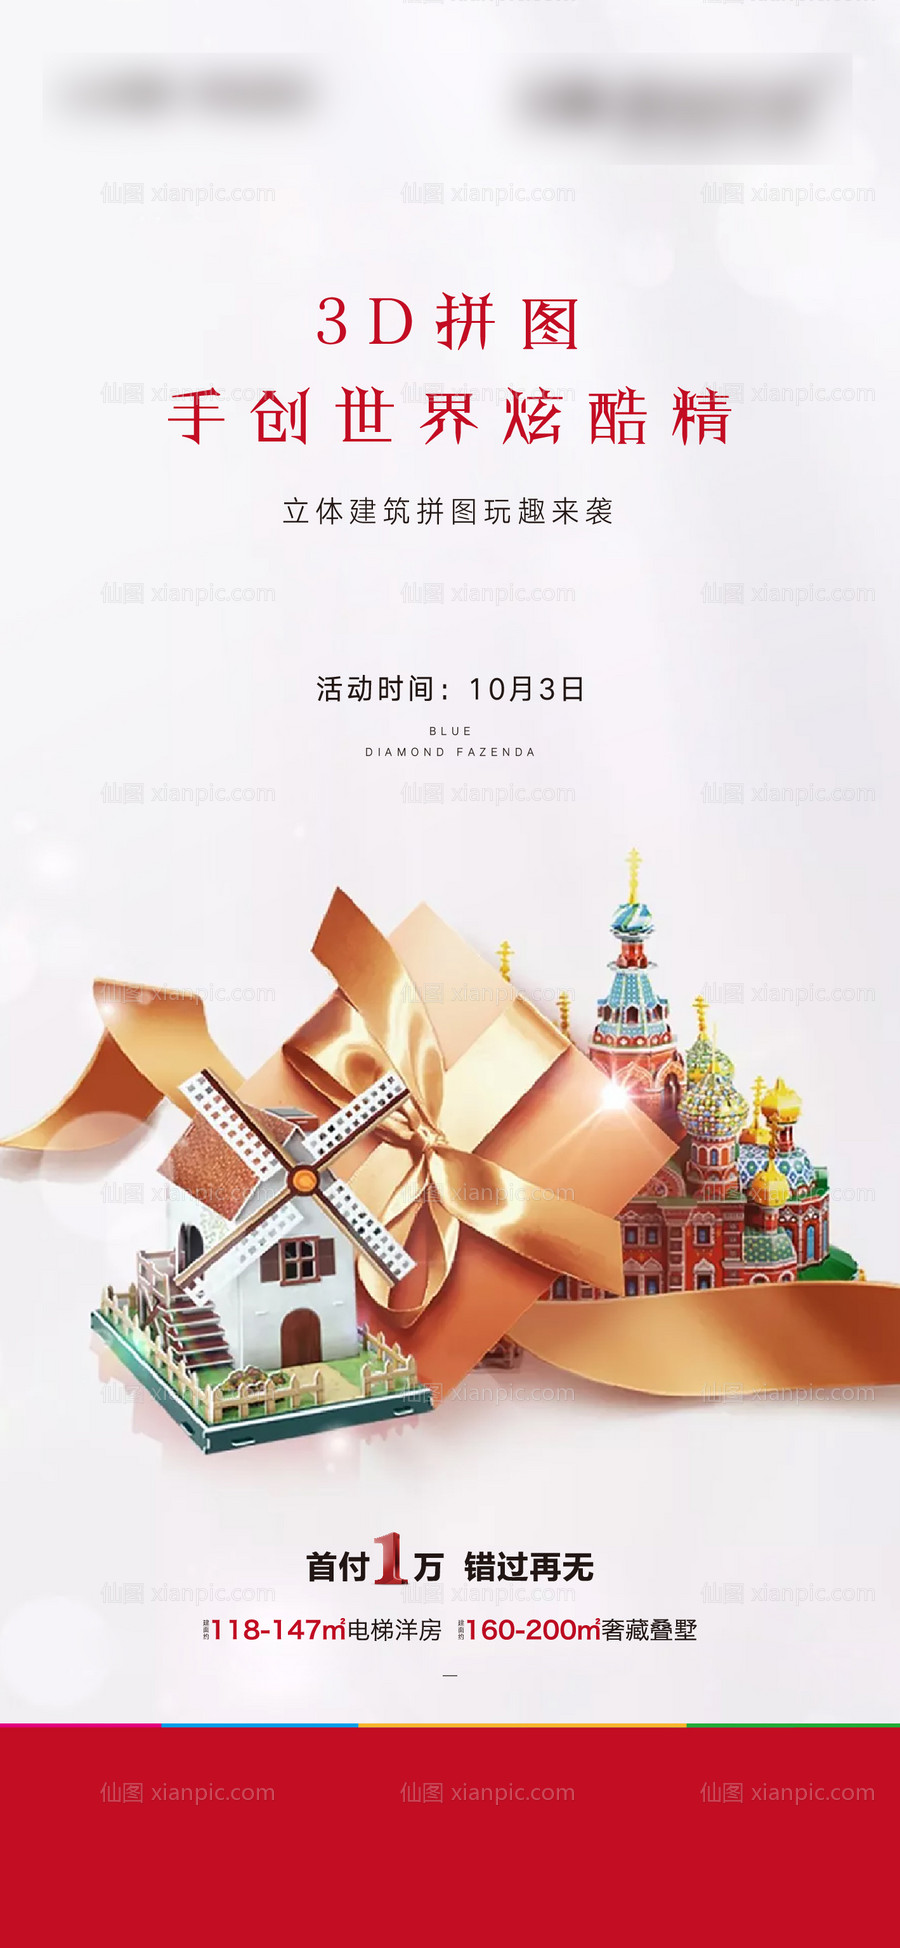 素材乐-3D拼图国庆节活动海报